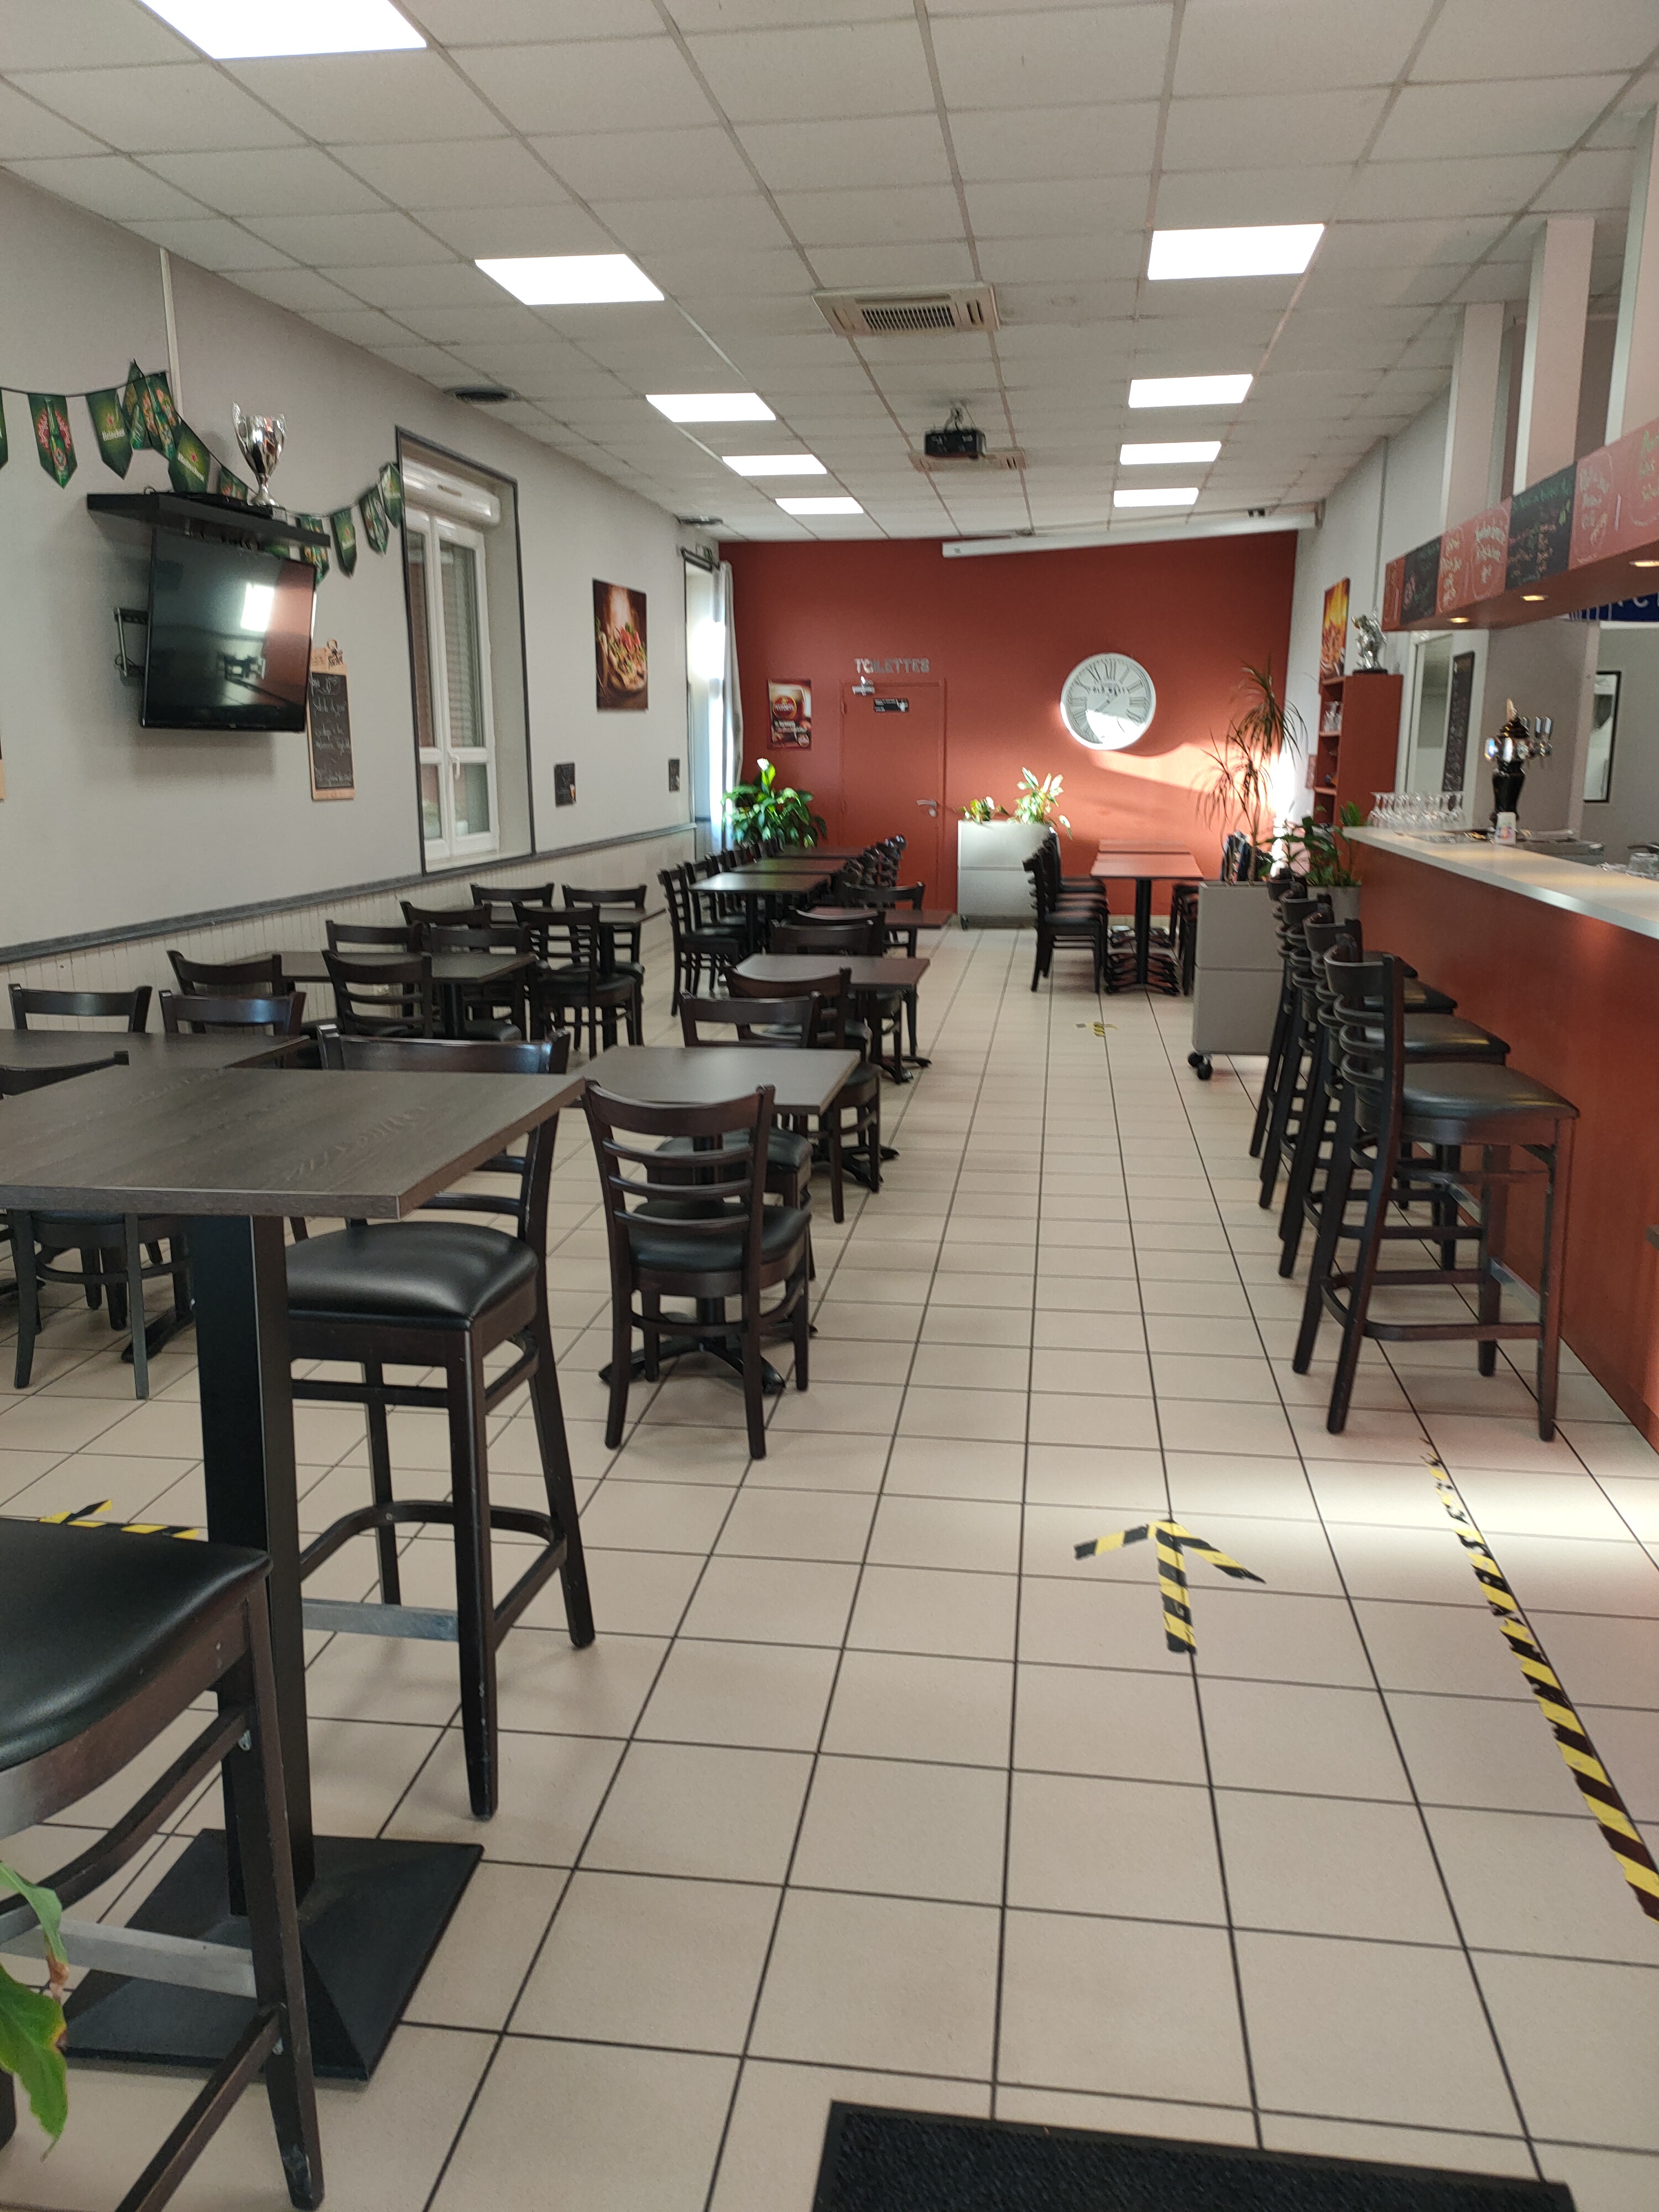 Restaurant complet de 145 M2
45 places bar cuisine bureau
Cour terrasse 25 places parking gratuit .wc aux normes